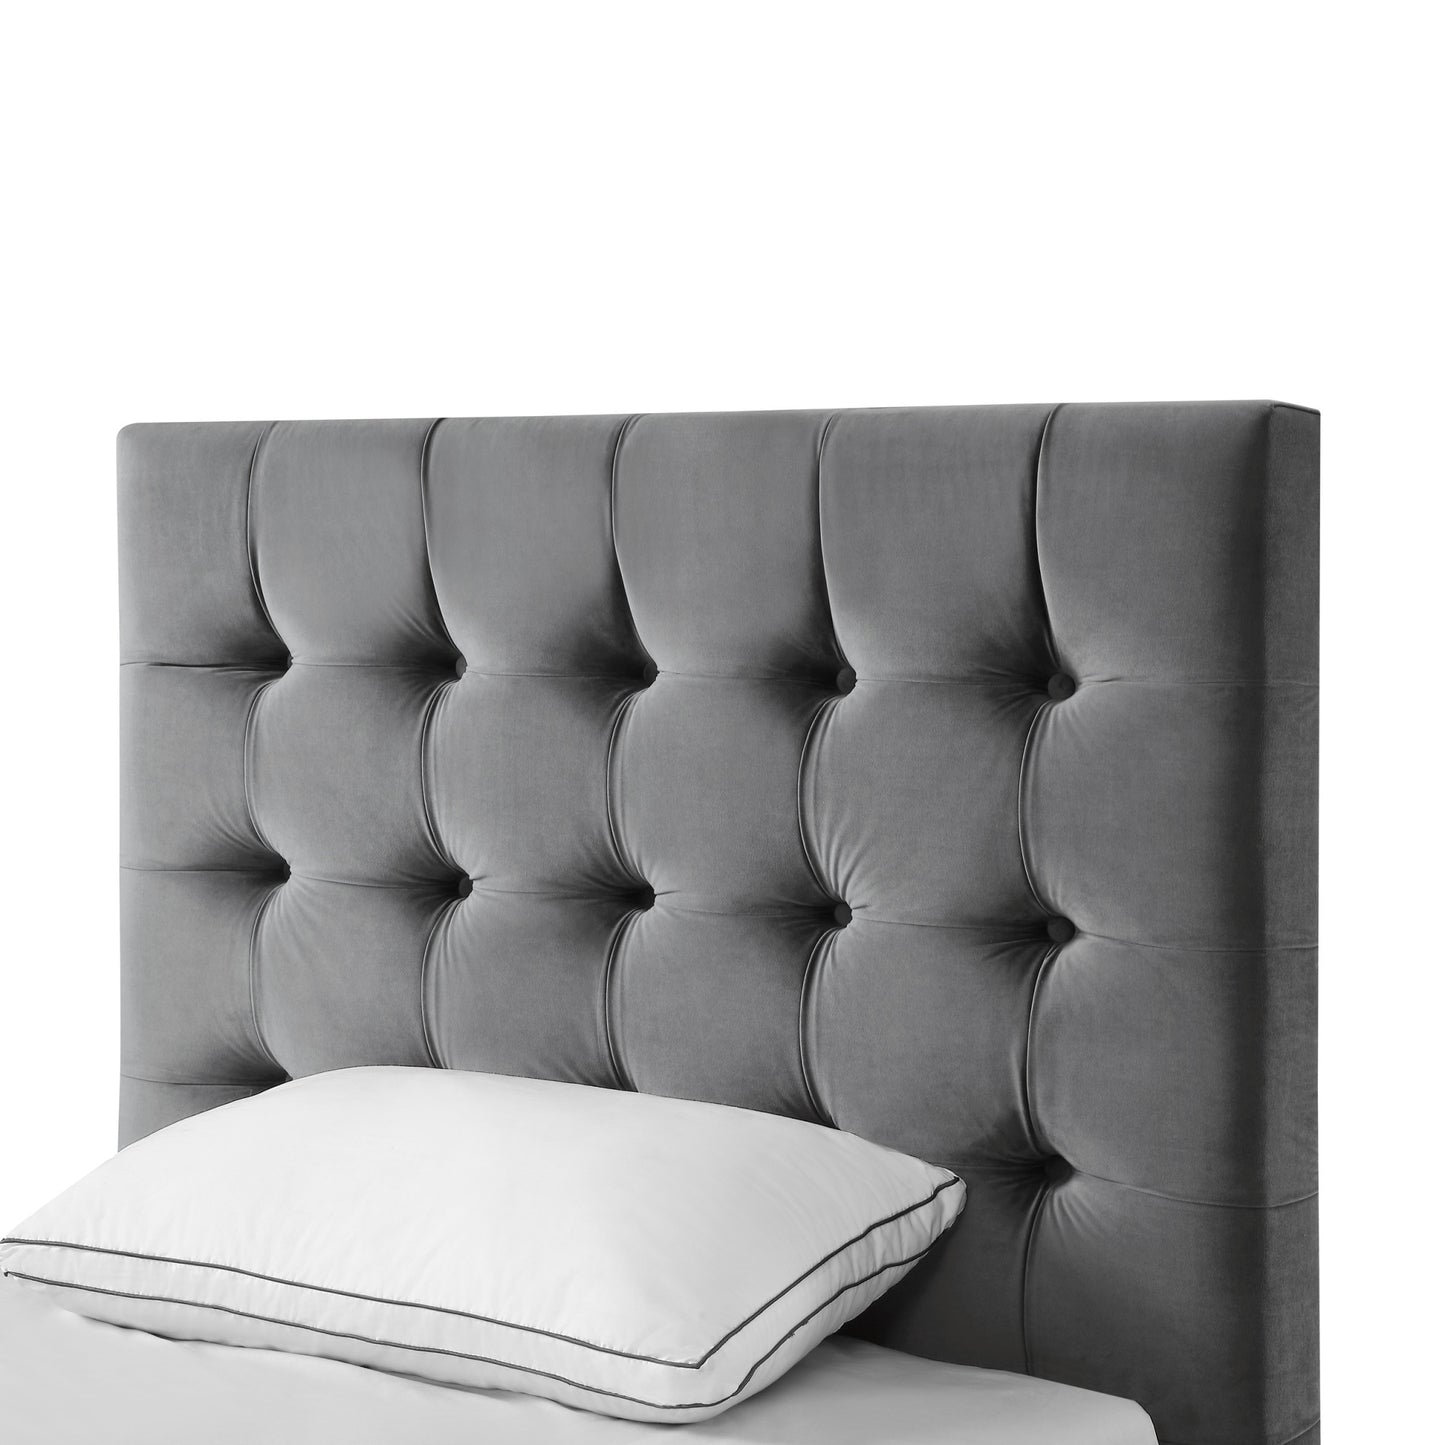 Gray Solid Wood Full Tufted Upholstered Velvet Bed